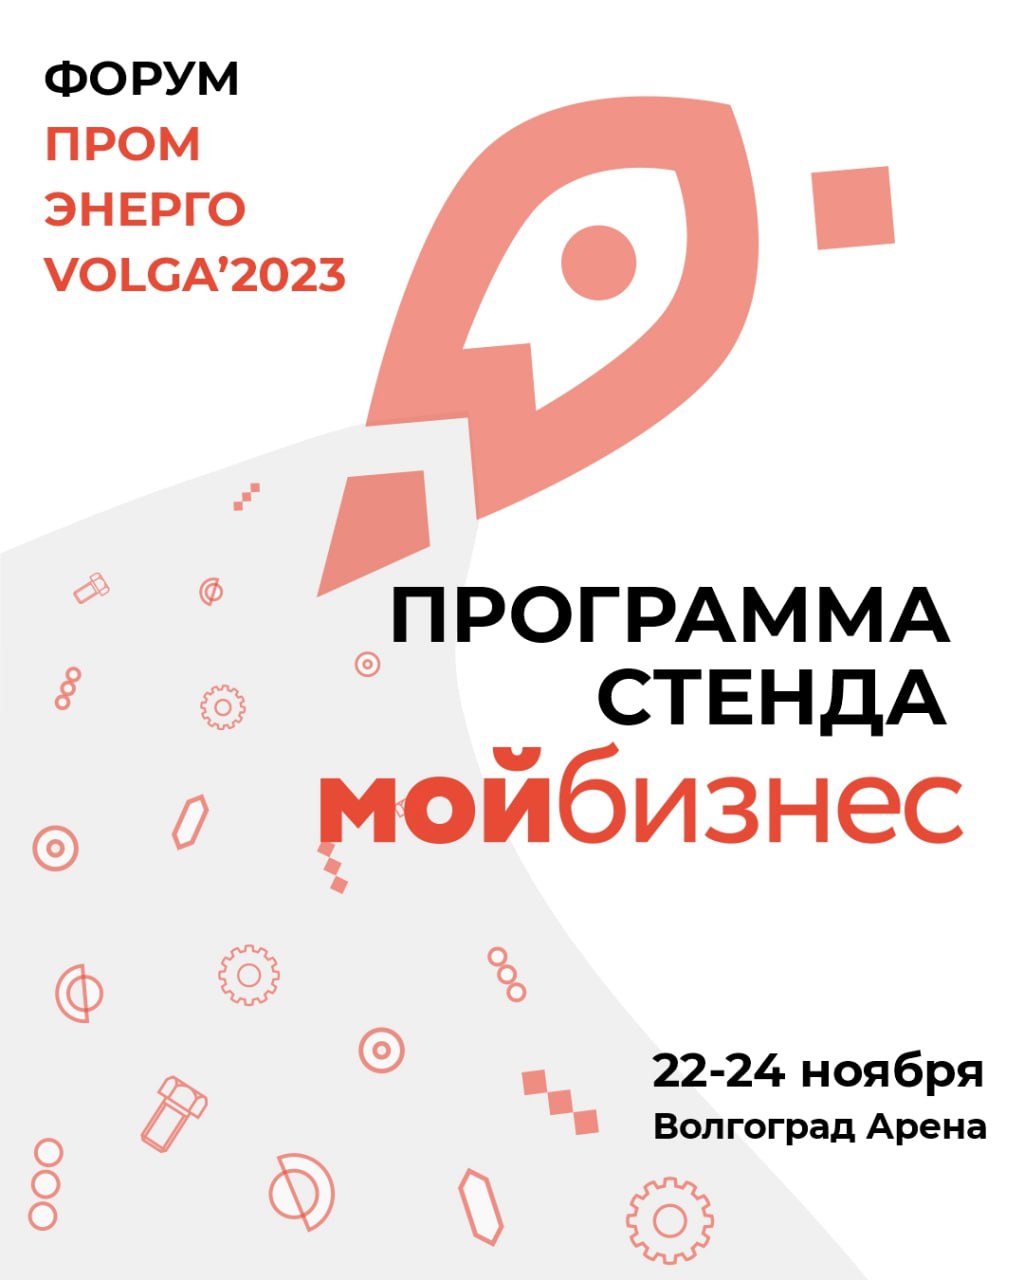 Приглашаем на форум «Пром-Энерго-Volga’2023»